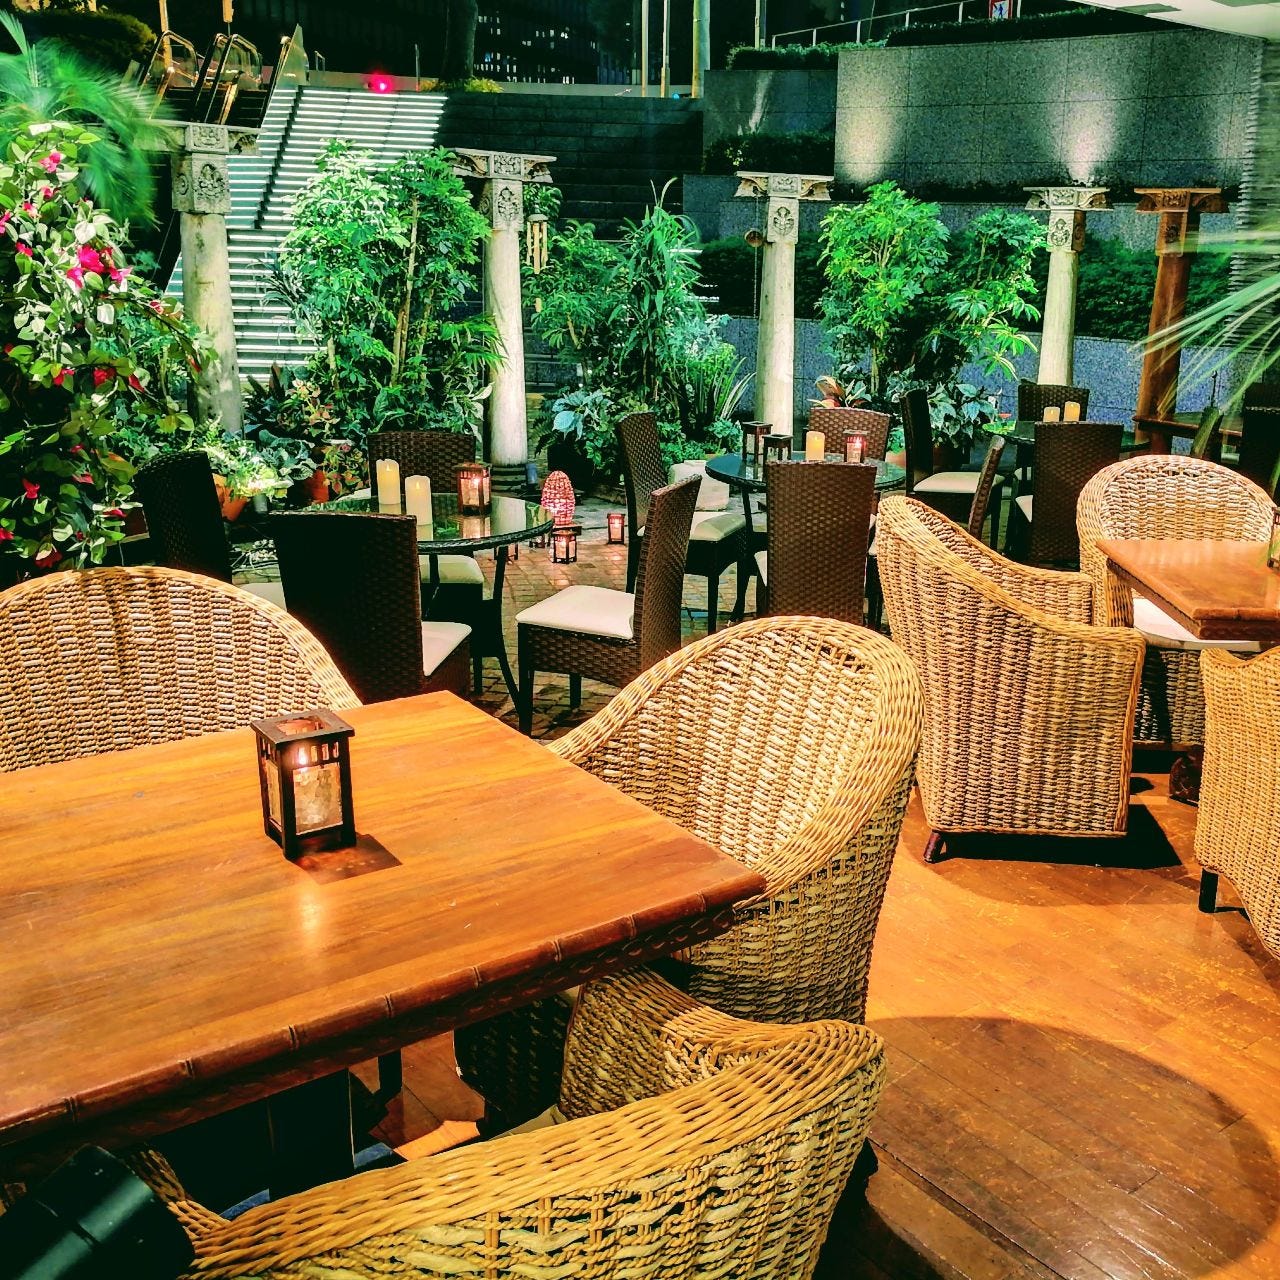 新宿 テラス席が人気のカフェ5選 バリのリゾート空間に日本初のガレット専門店も Favy ファビー